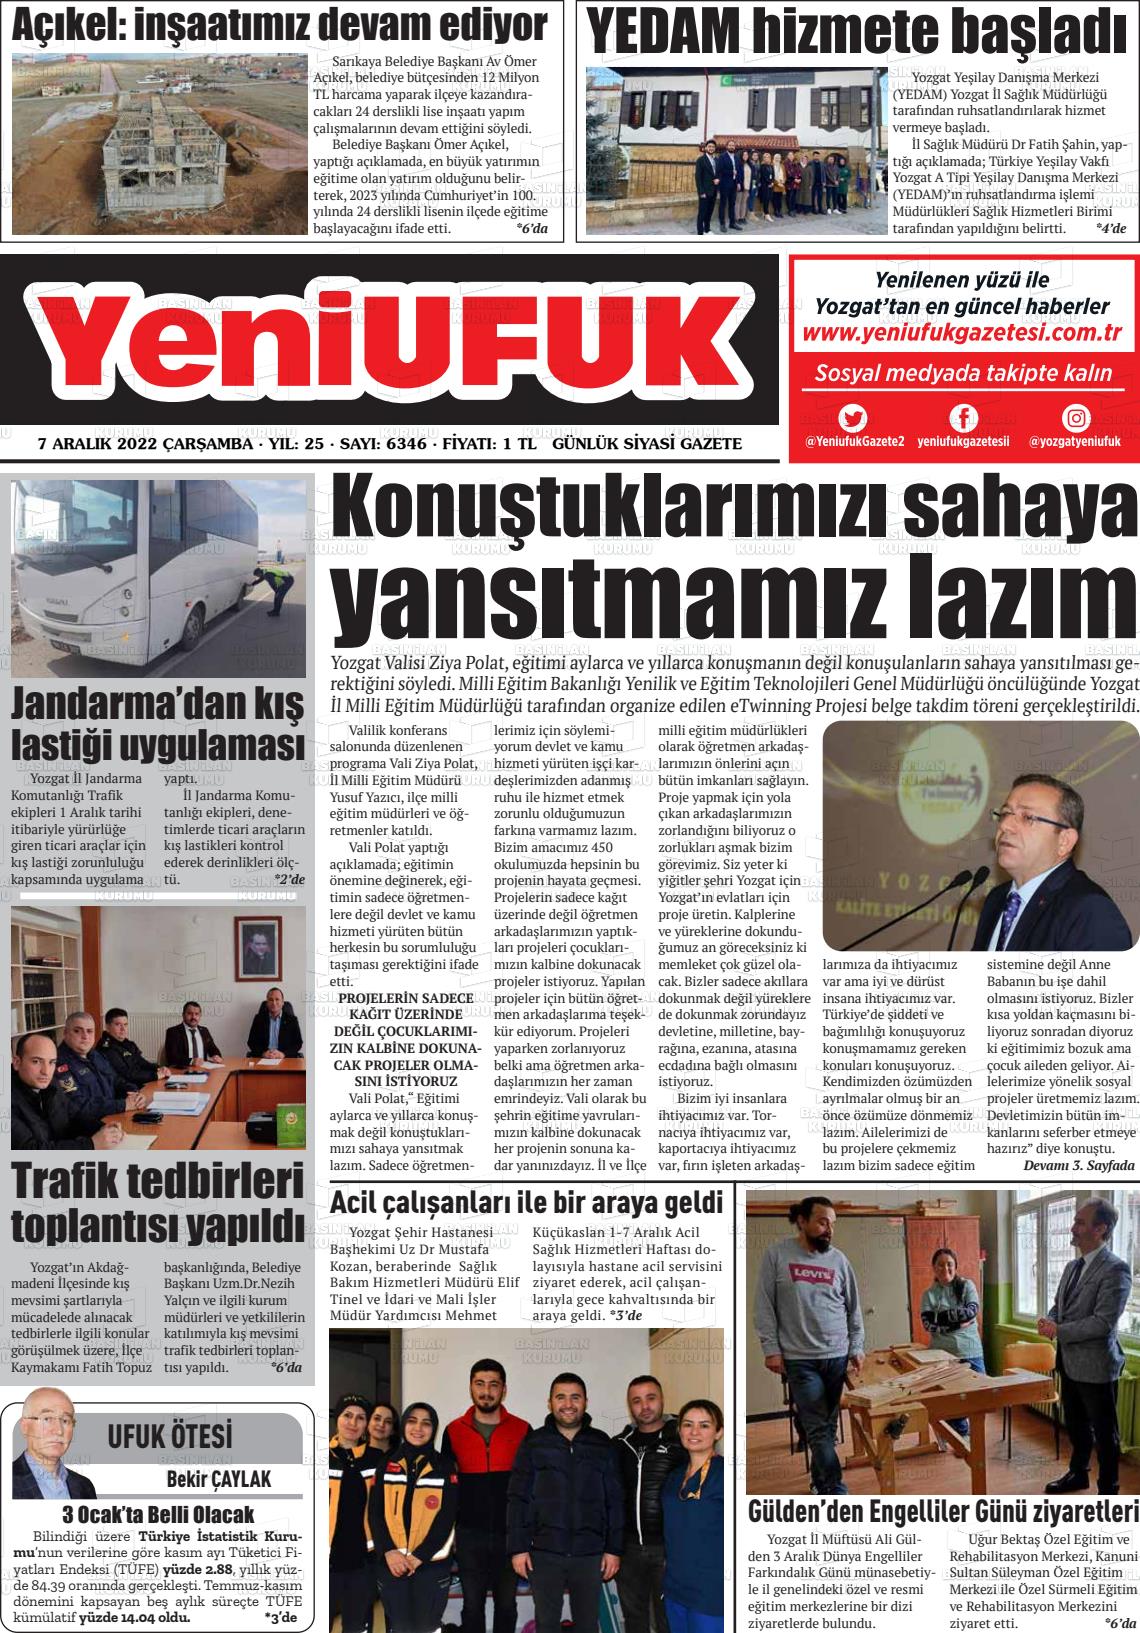 07 Aralık 2022 Yozgat Yeni Ufuk Gazete Manşeti